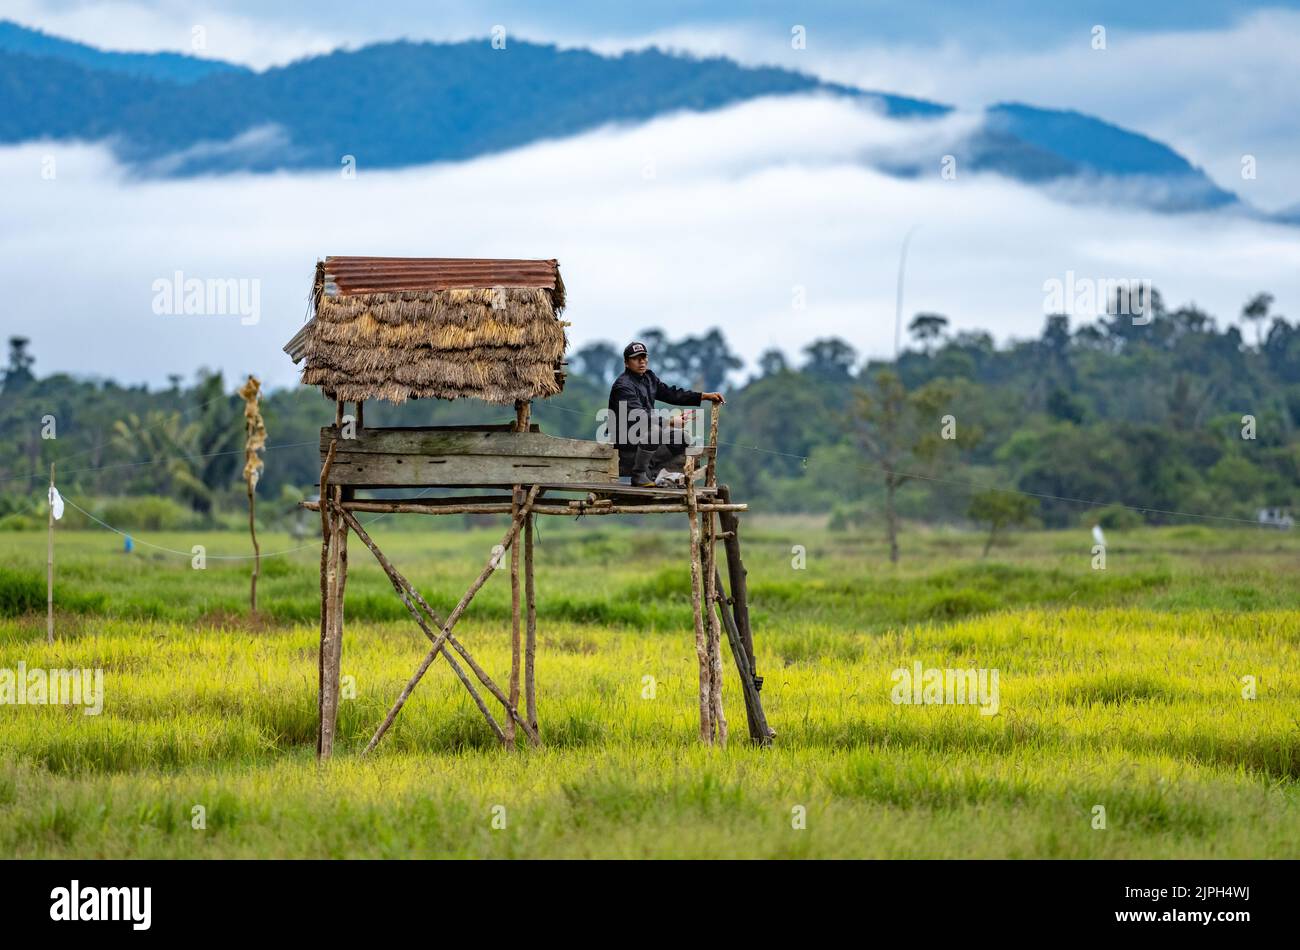 Un uomo indonesiano seduto su una piattaforma, utilizzando l'imbragatura sparata per allontanare gli uccelli nel campo di riso. Sulawesi, Indonesia. Foto Stock